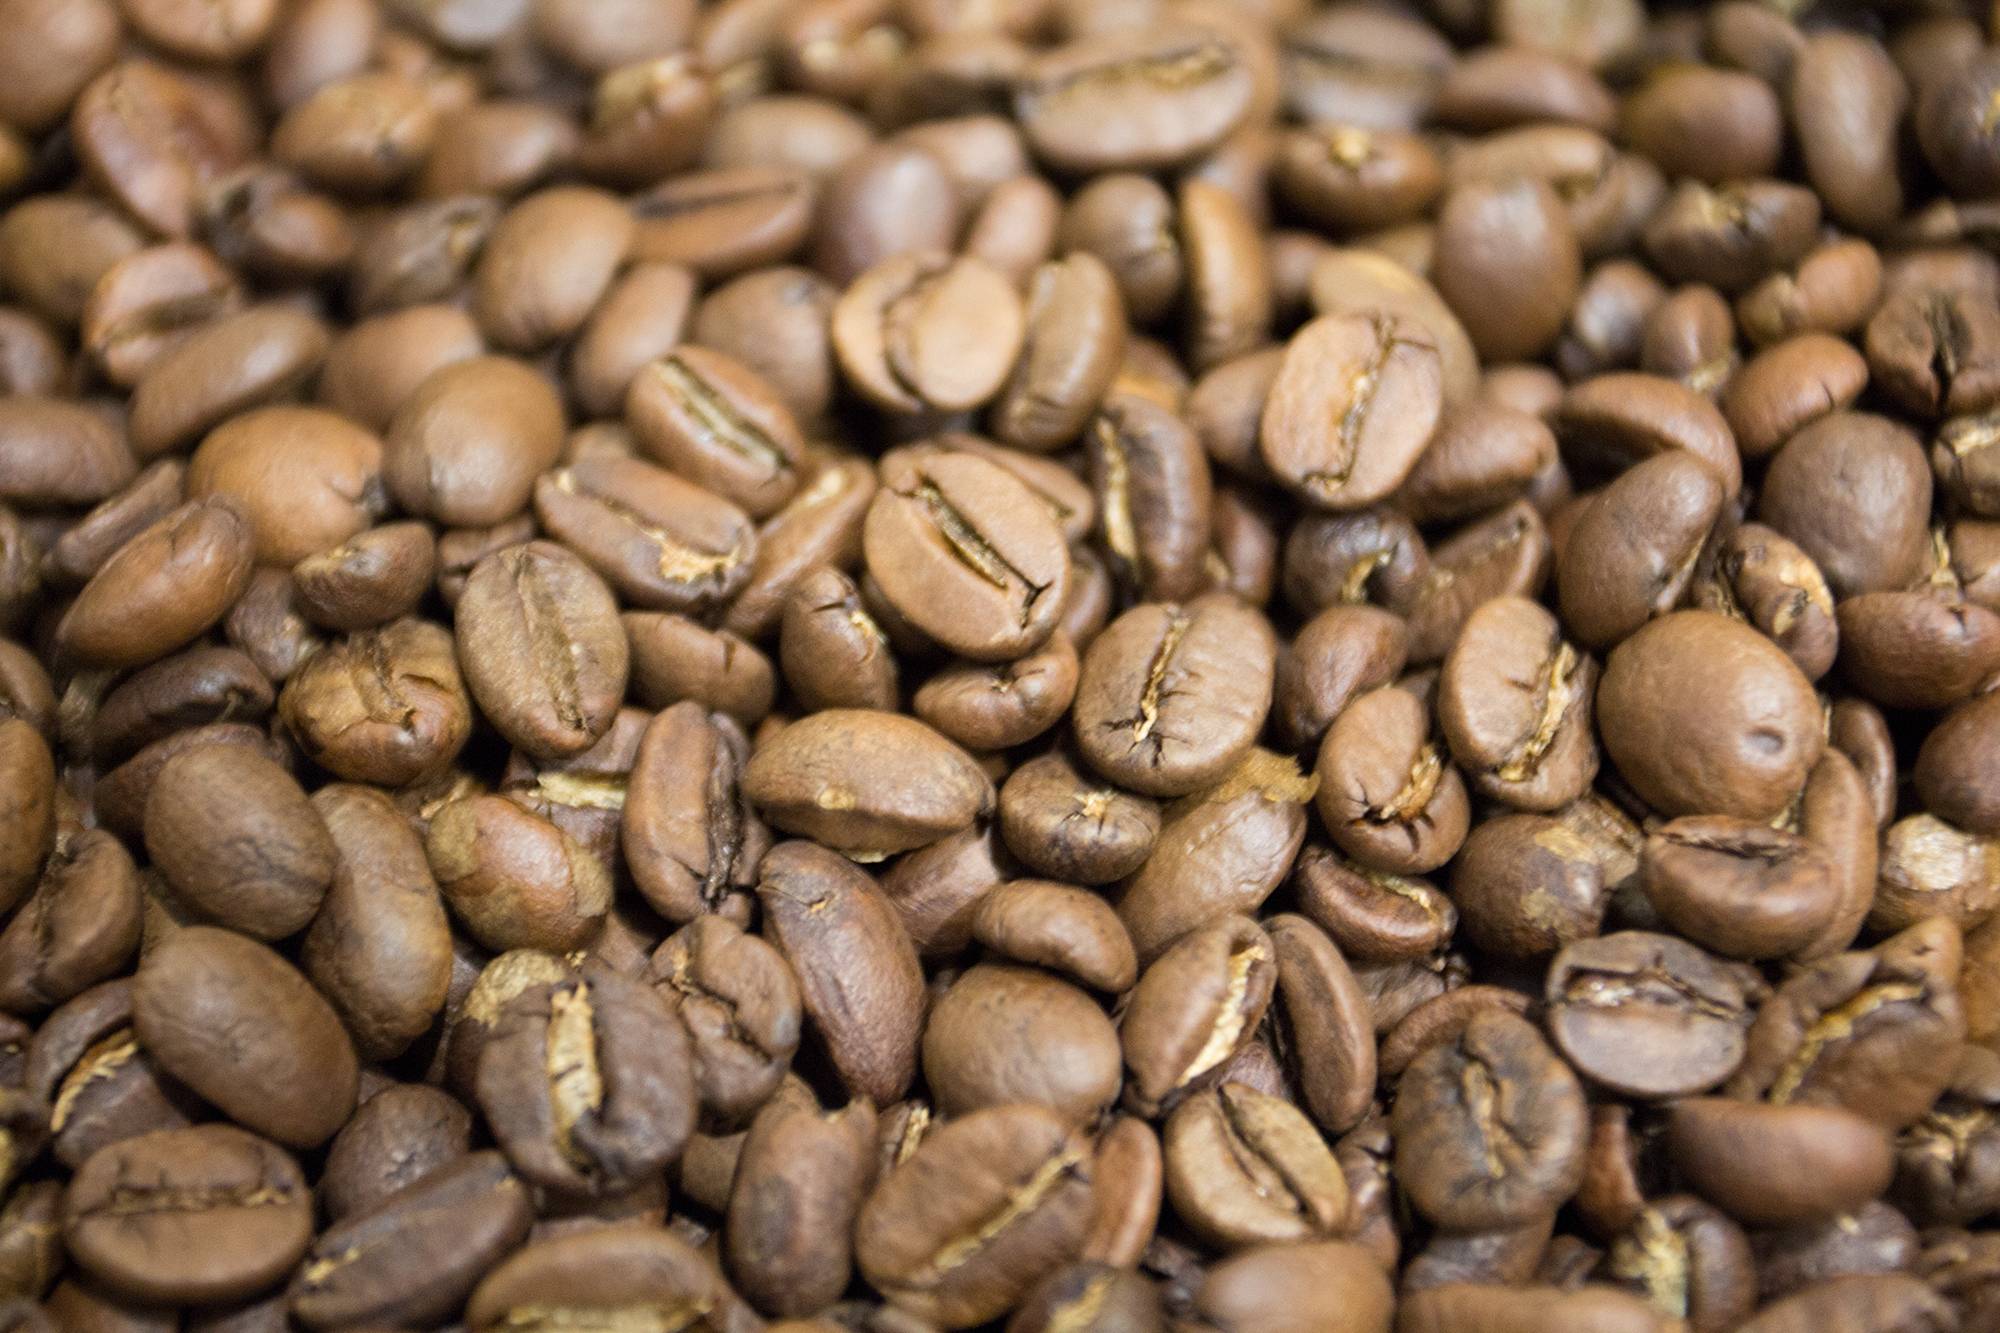 Кофе в домашних условиях: восемь способов приготовления